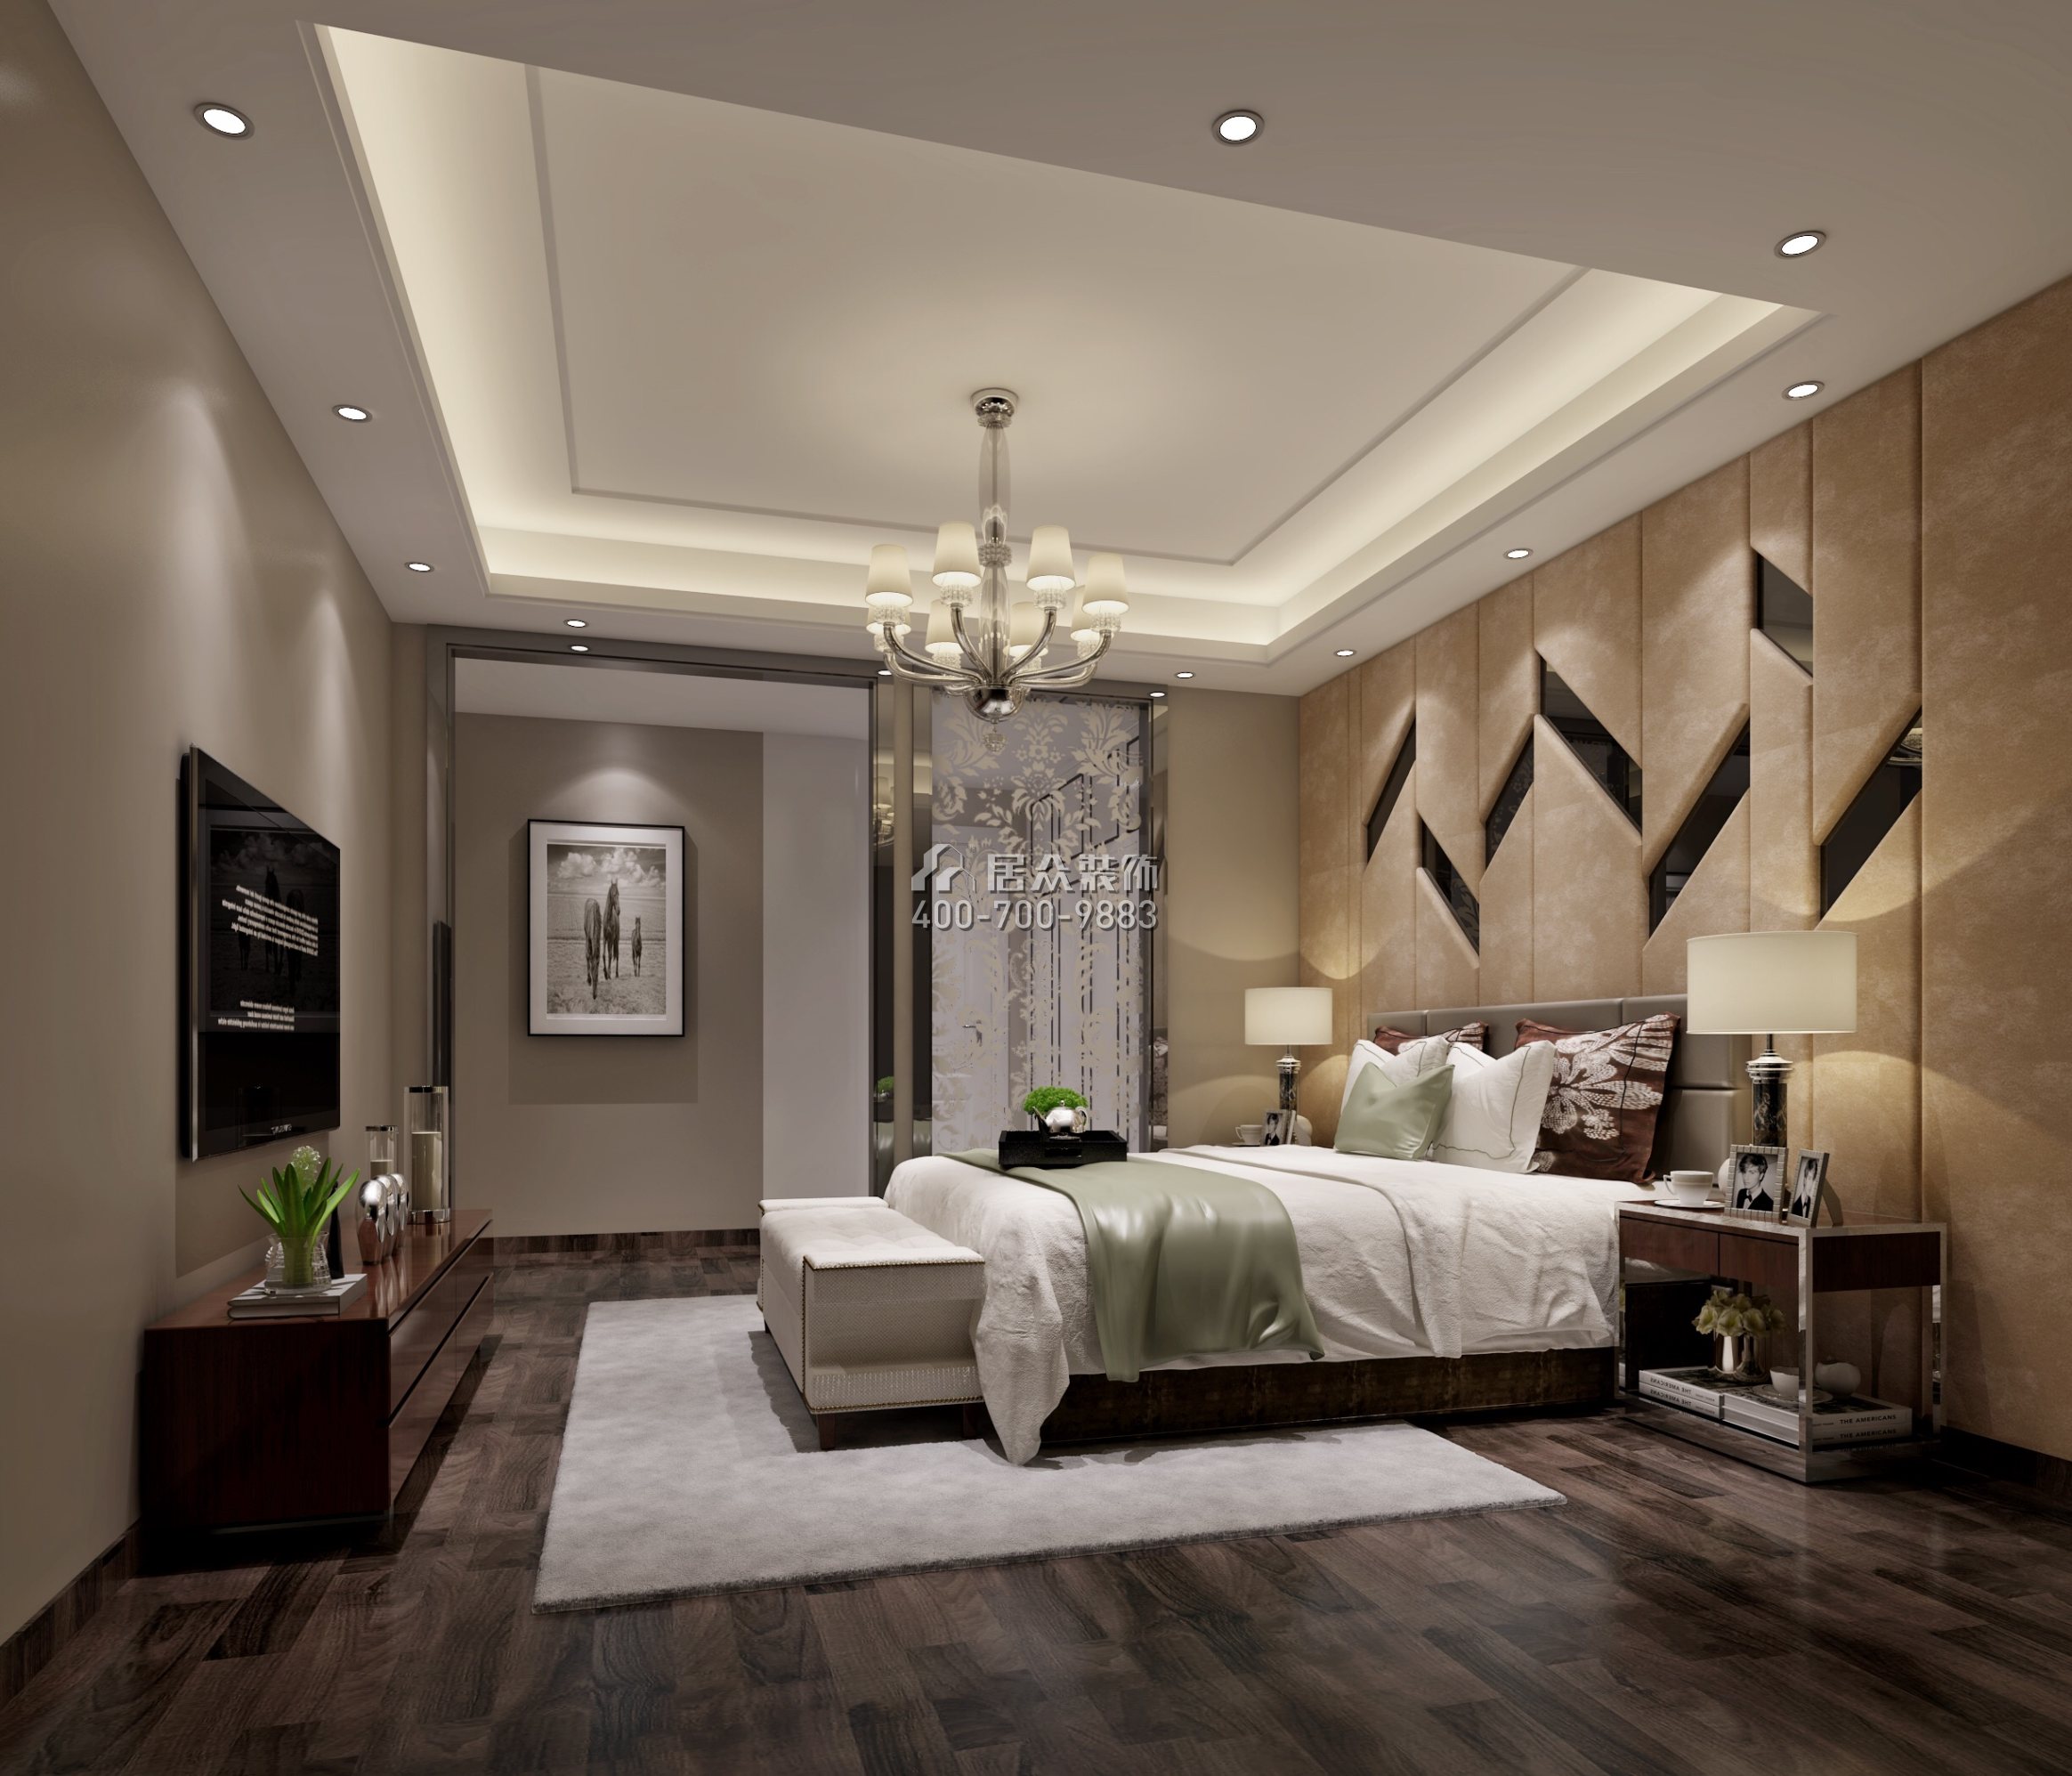 松茂御龙湾雅苑一期170平方米现代简约风格平层户型卧室装修效果图